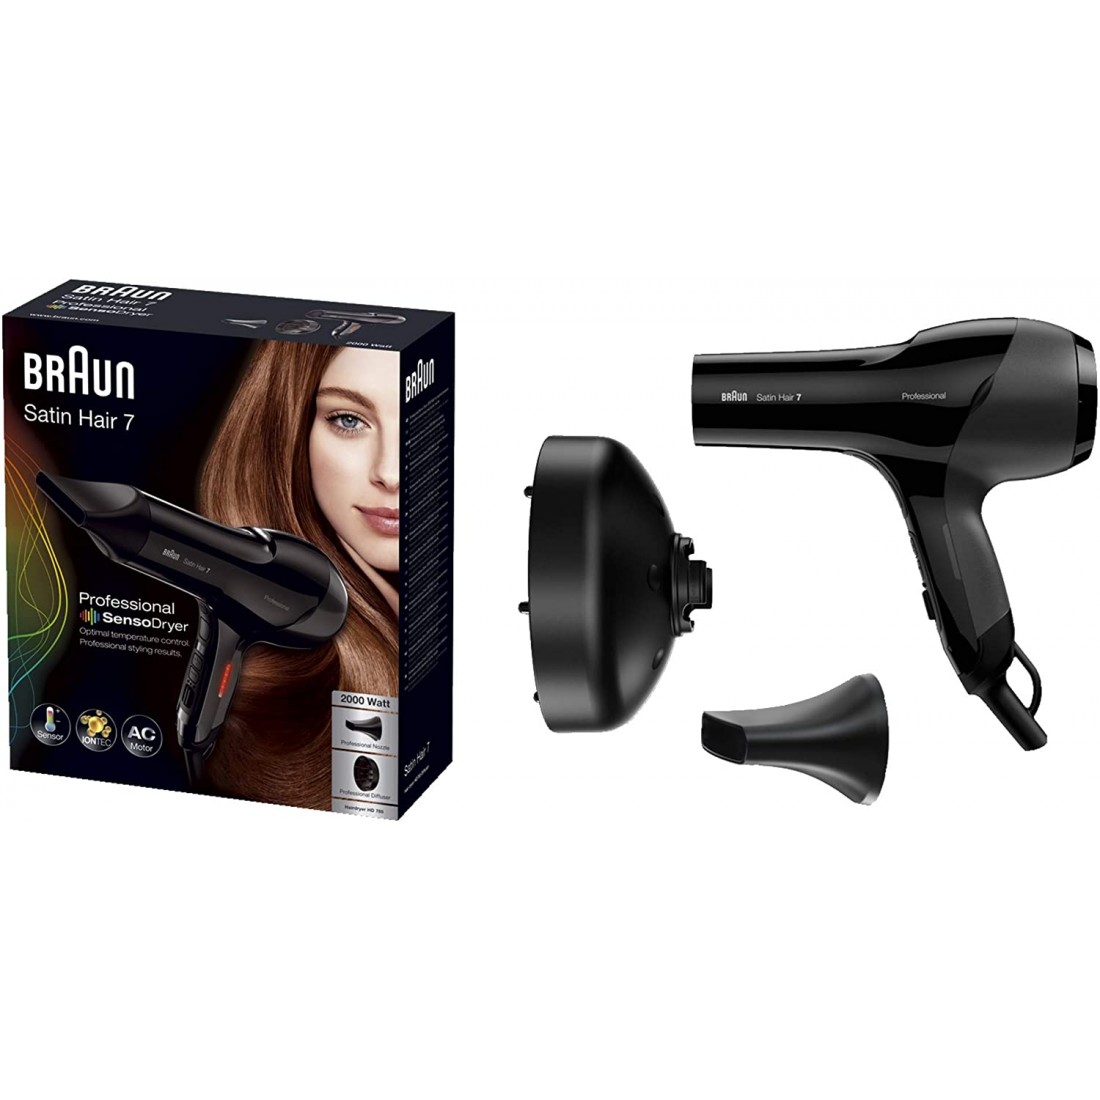 Máy sấy tóc Braun Satin Hair HD785 chính hãng của đức,giá rẻ